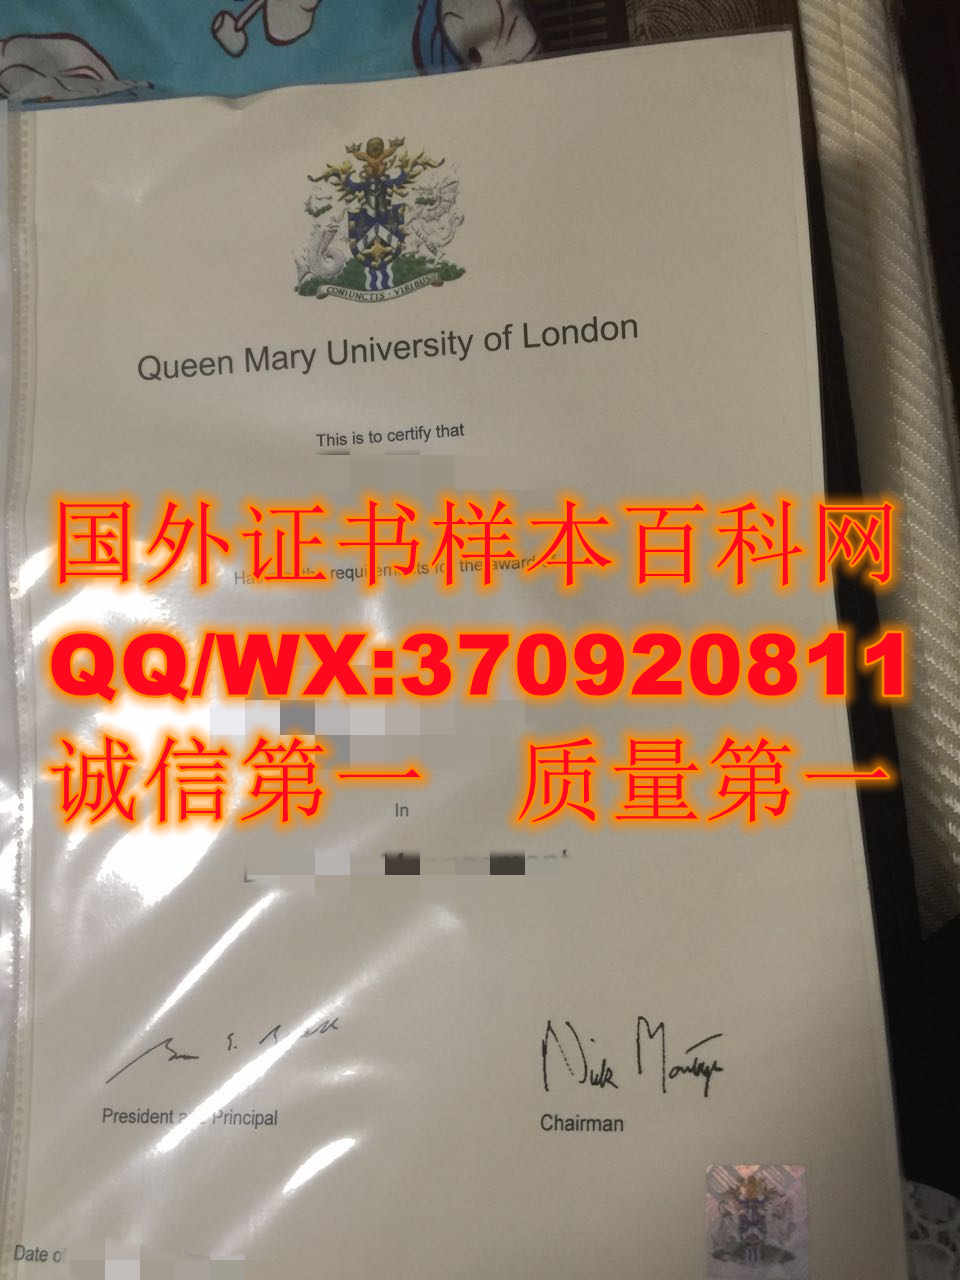 【英国学院】伦敦玛丽女王大学毕业证样本